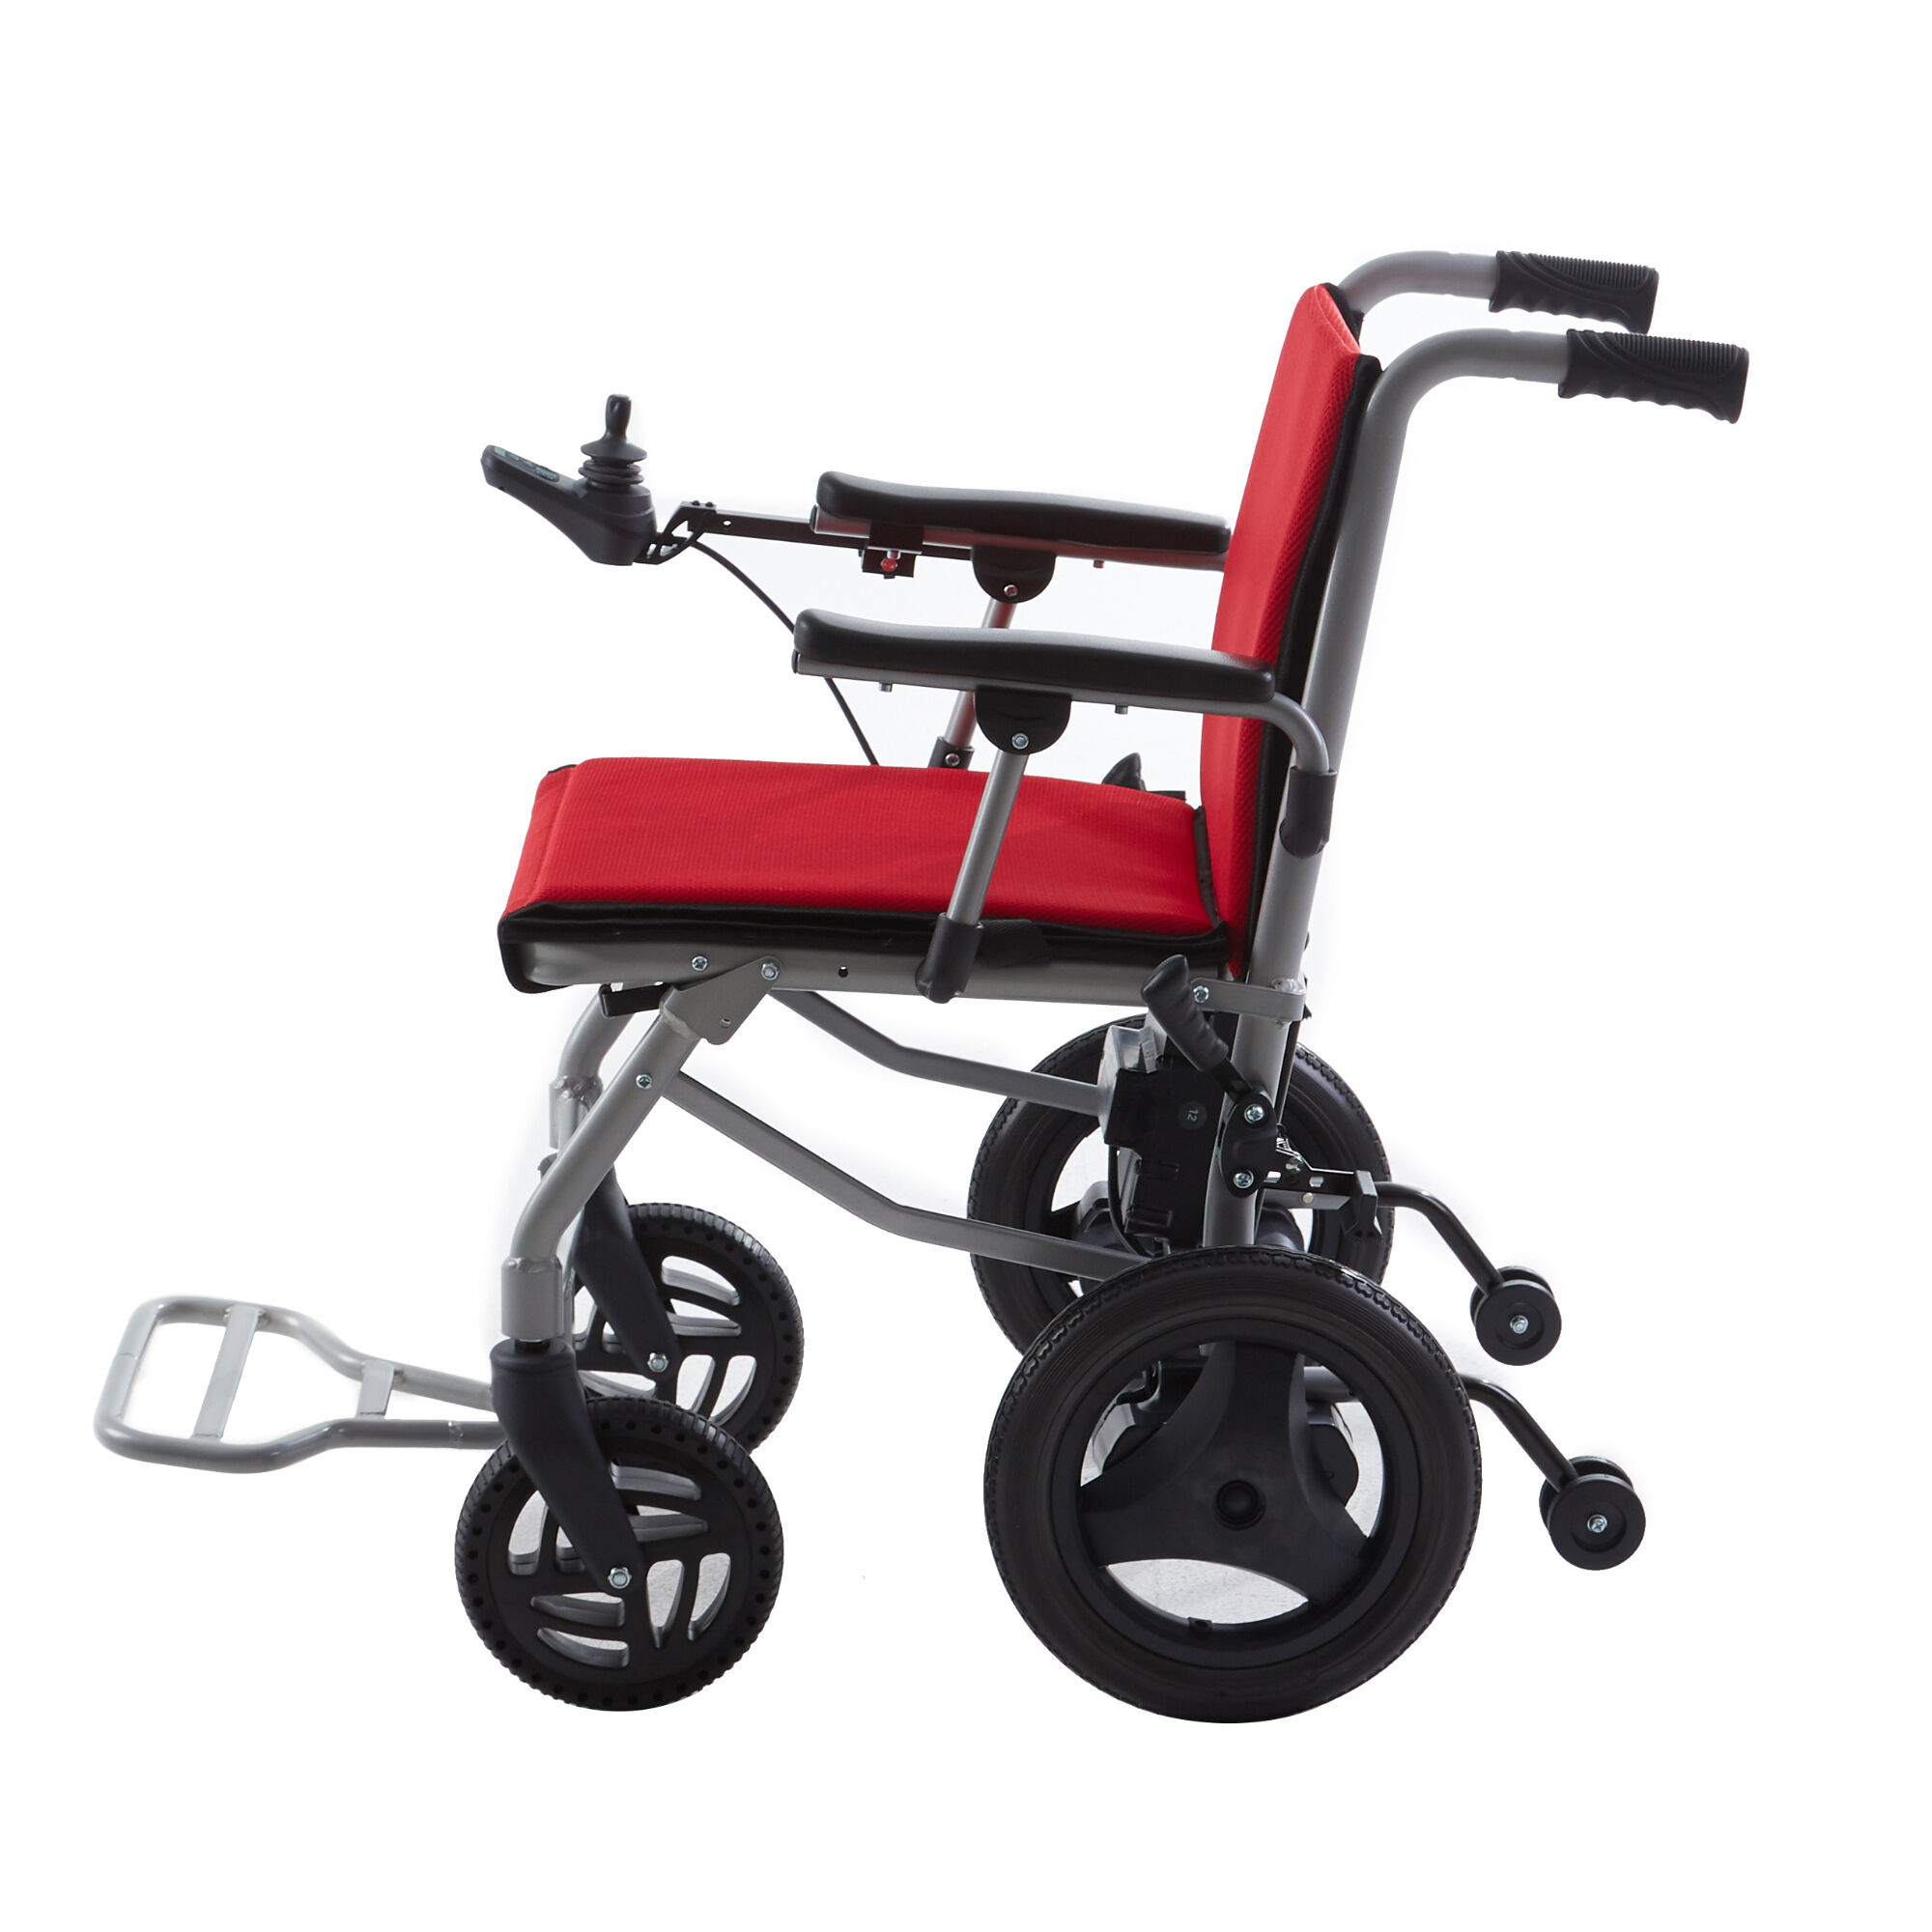 BC-EALD3 hliníkový ultralehký skládací cestovní elektrický invalidní vozík